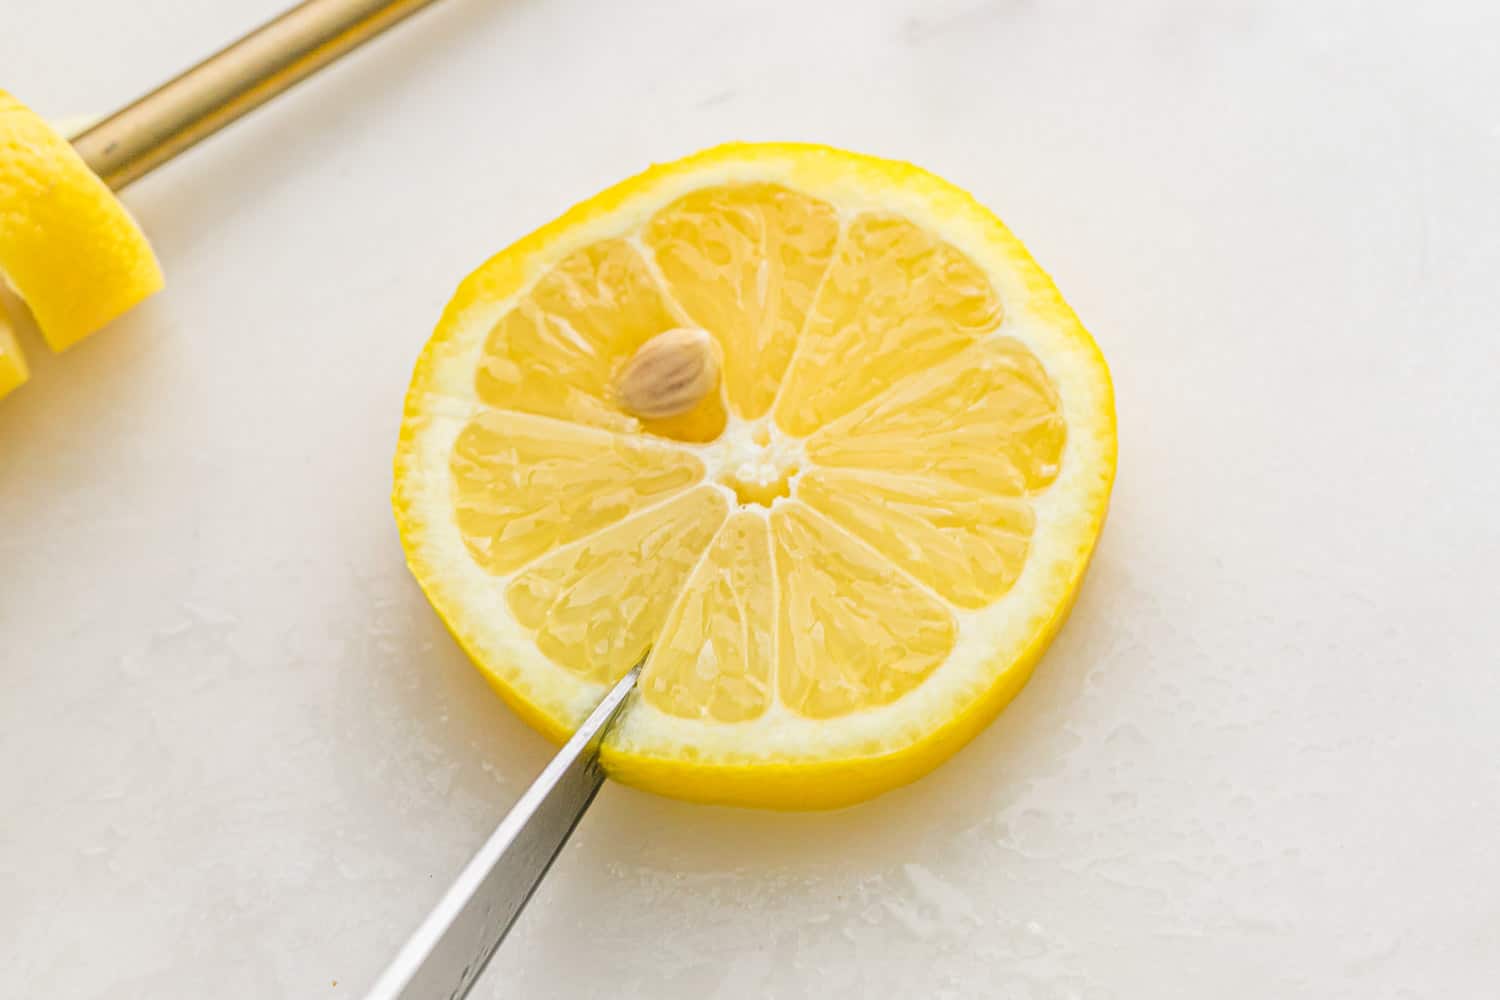 Slit being cut in a lemon wheel.